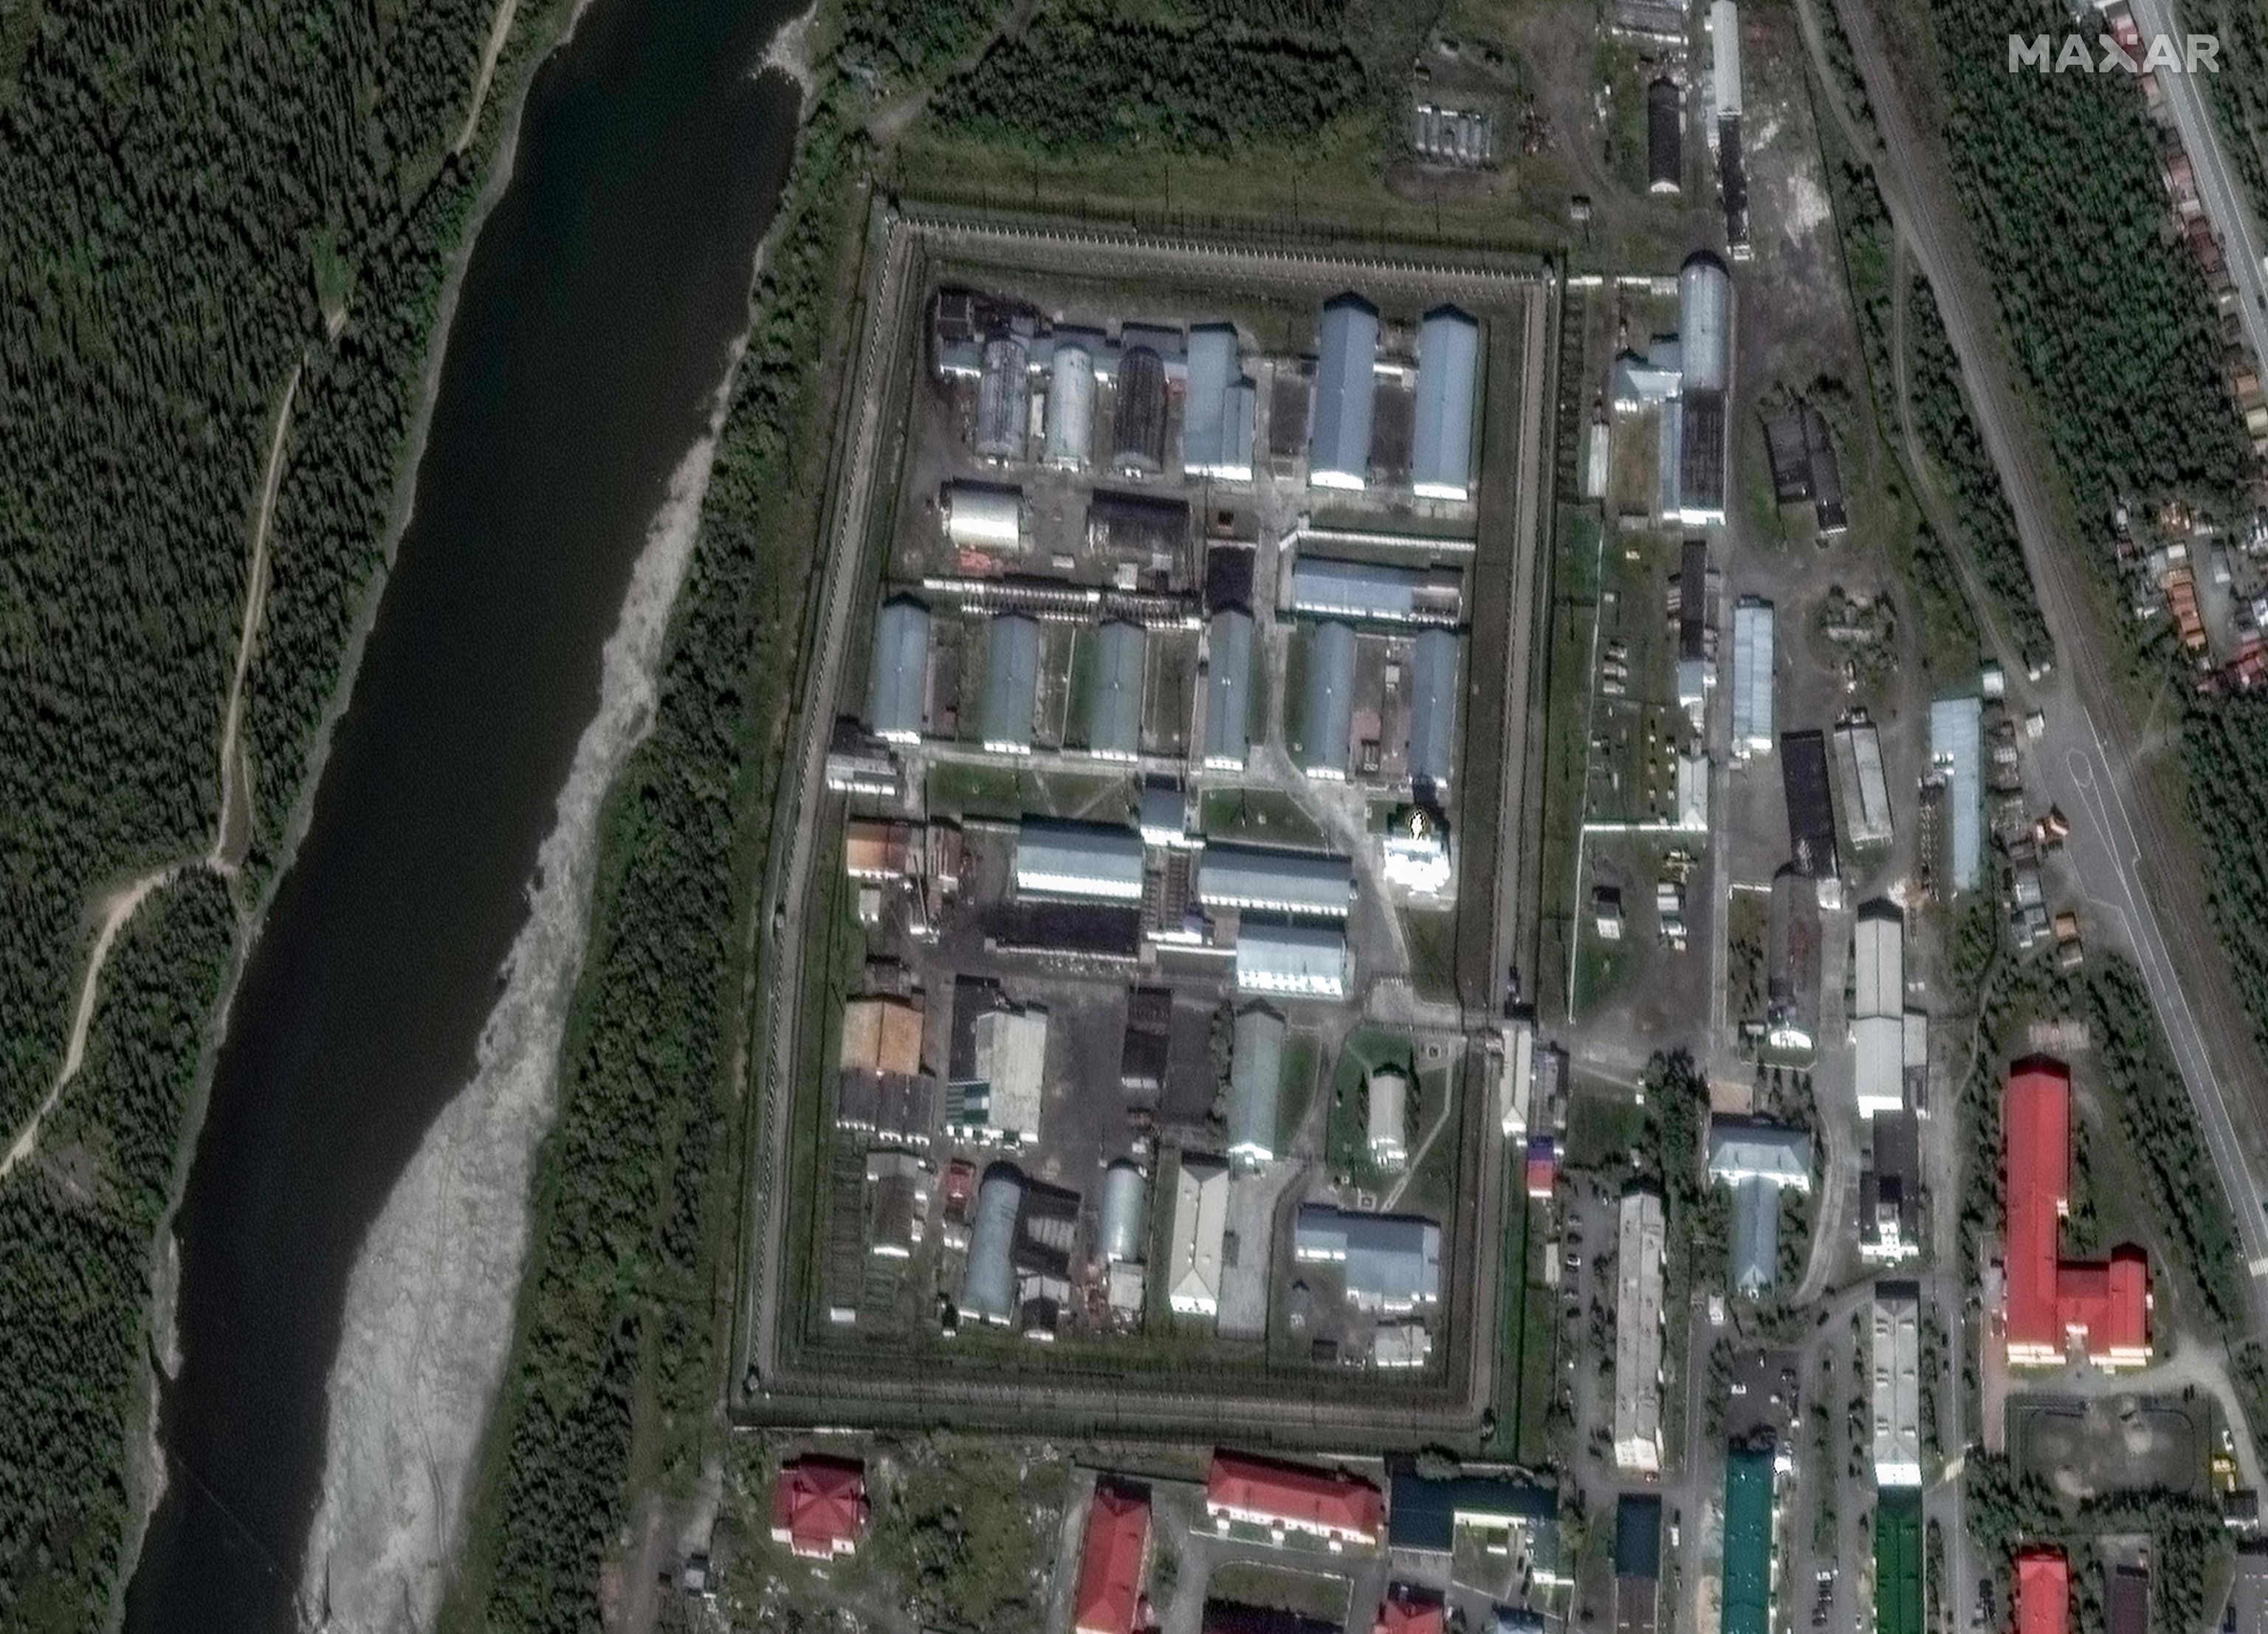 Vista área de la prisión 'Lobo polar' tomada por Maxar Technologies.